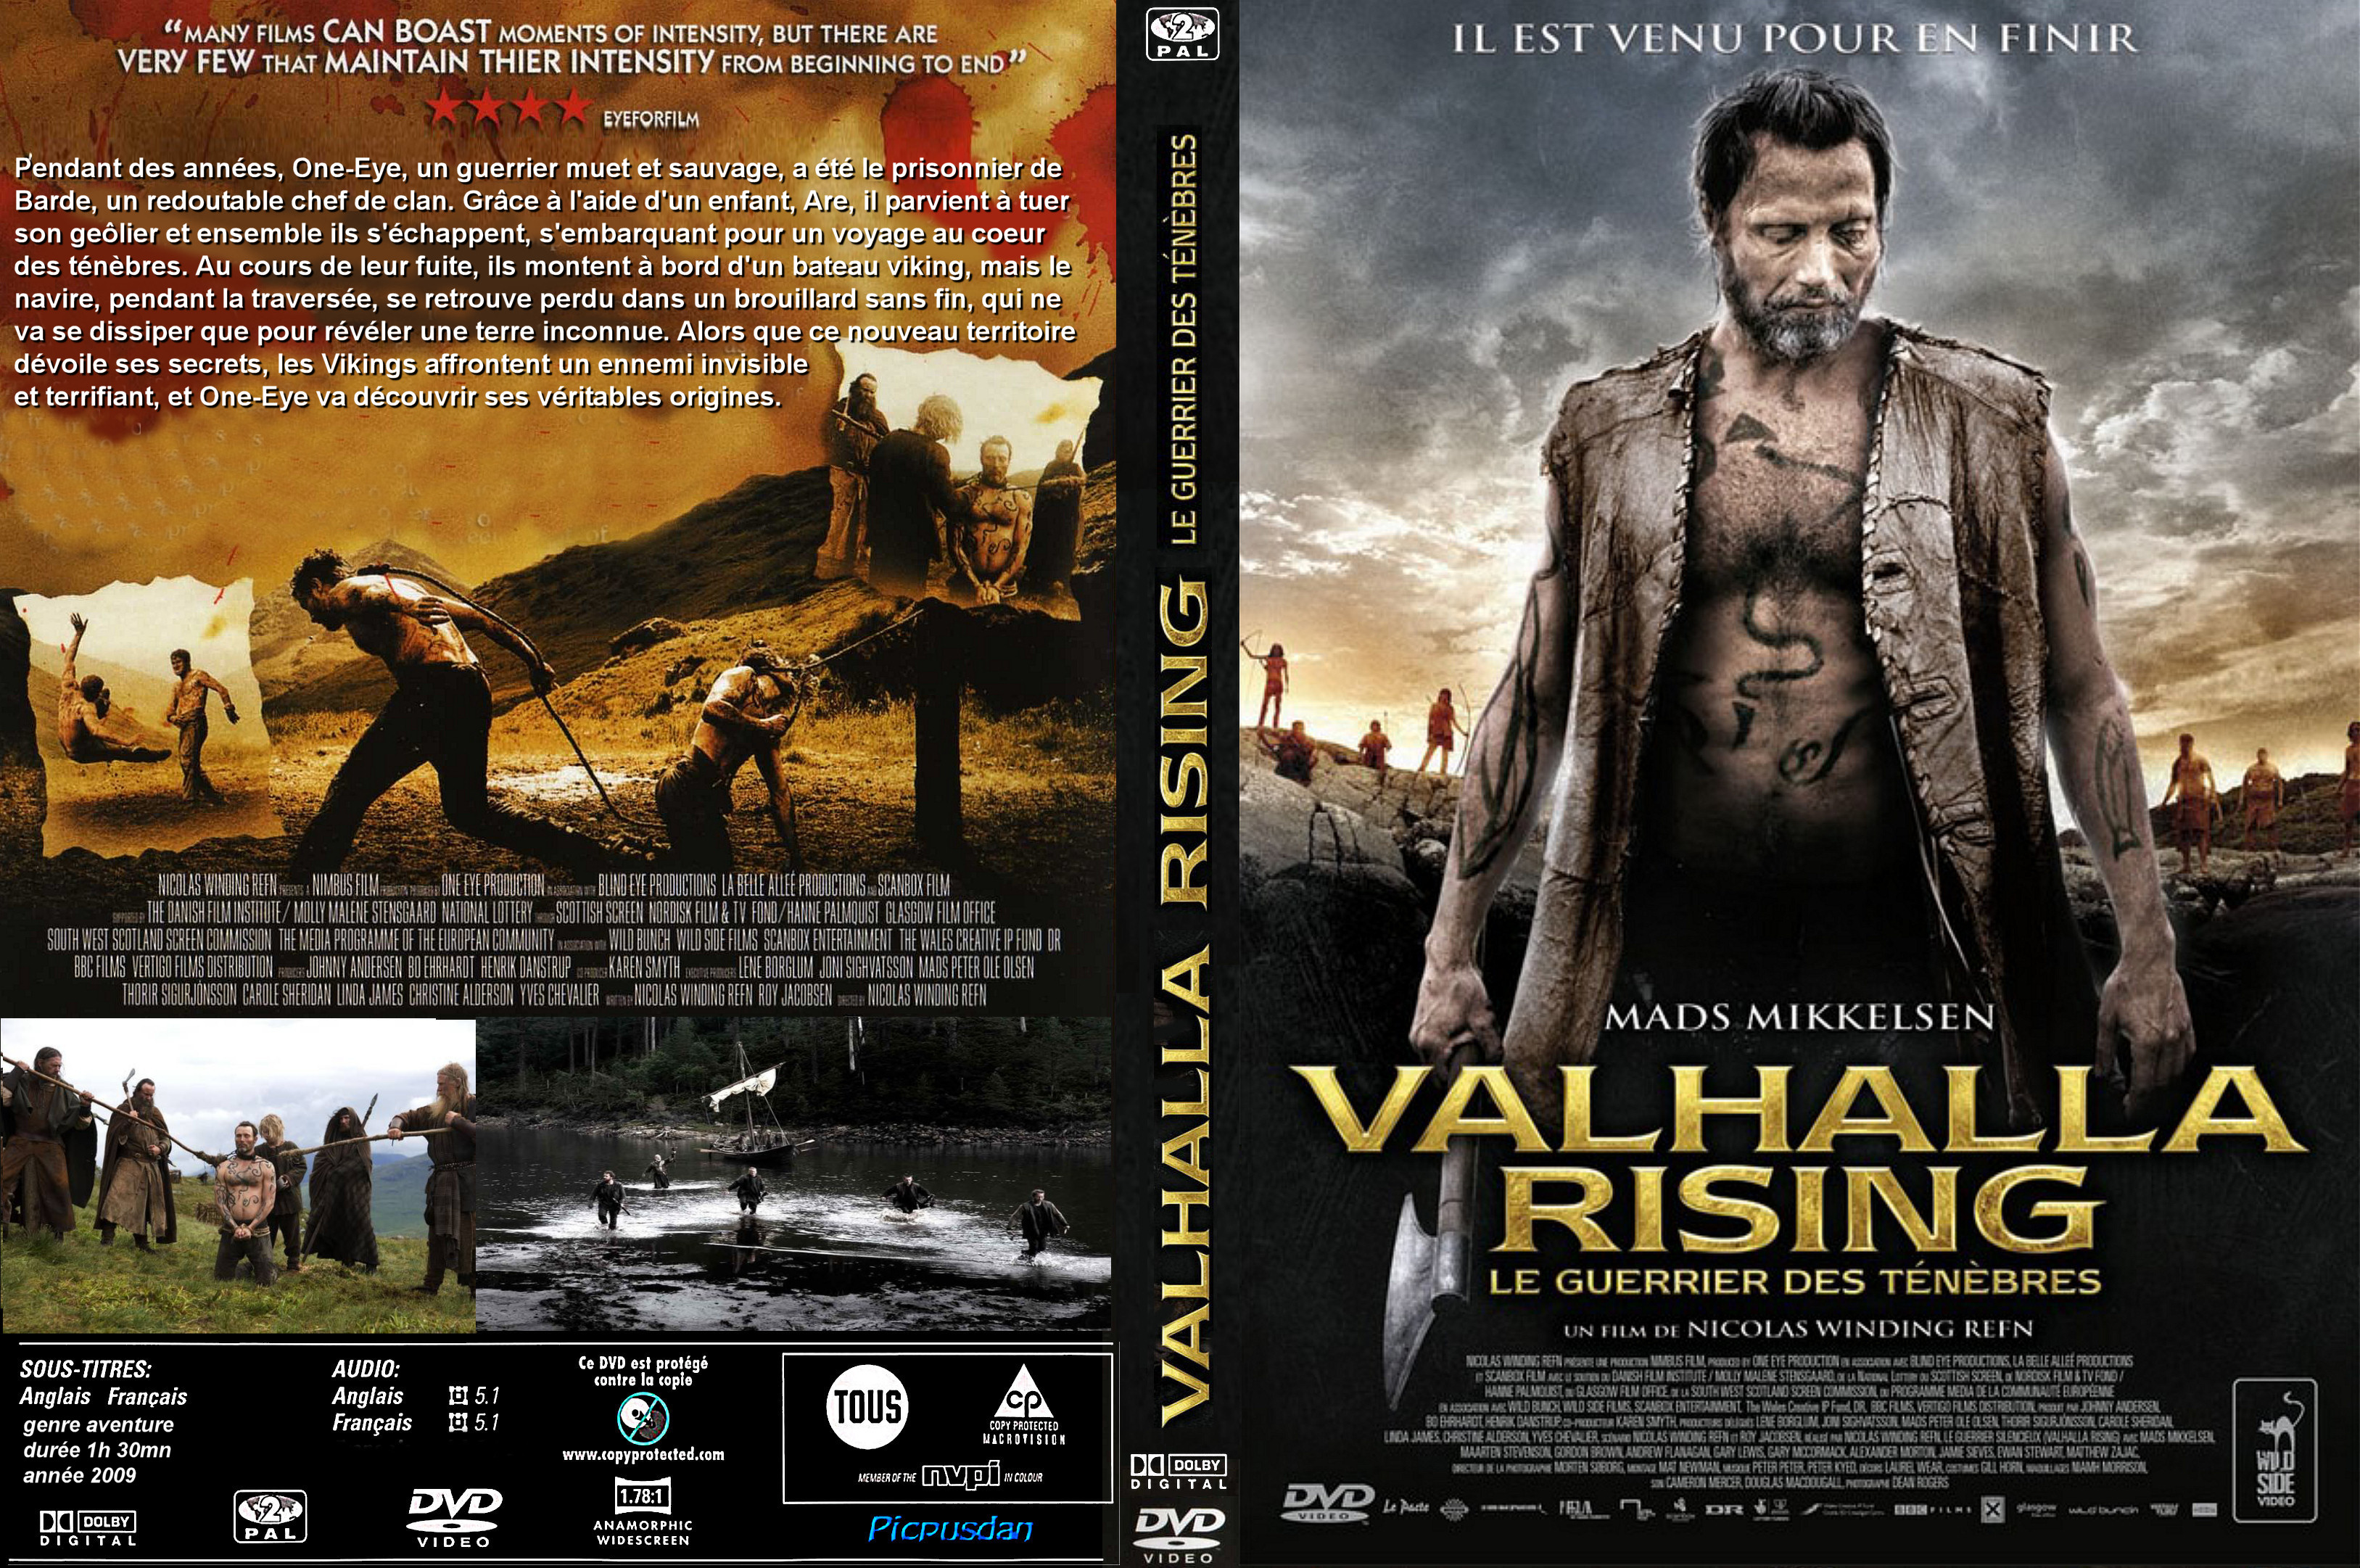 Jaquette DVD Valhalla rising custom